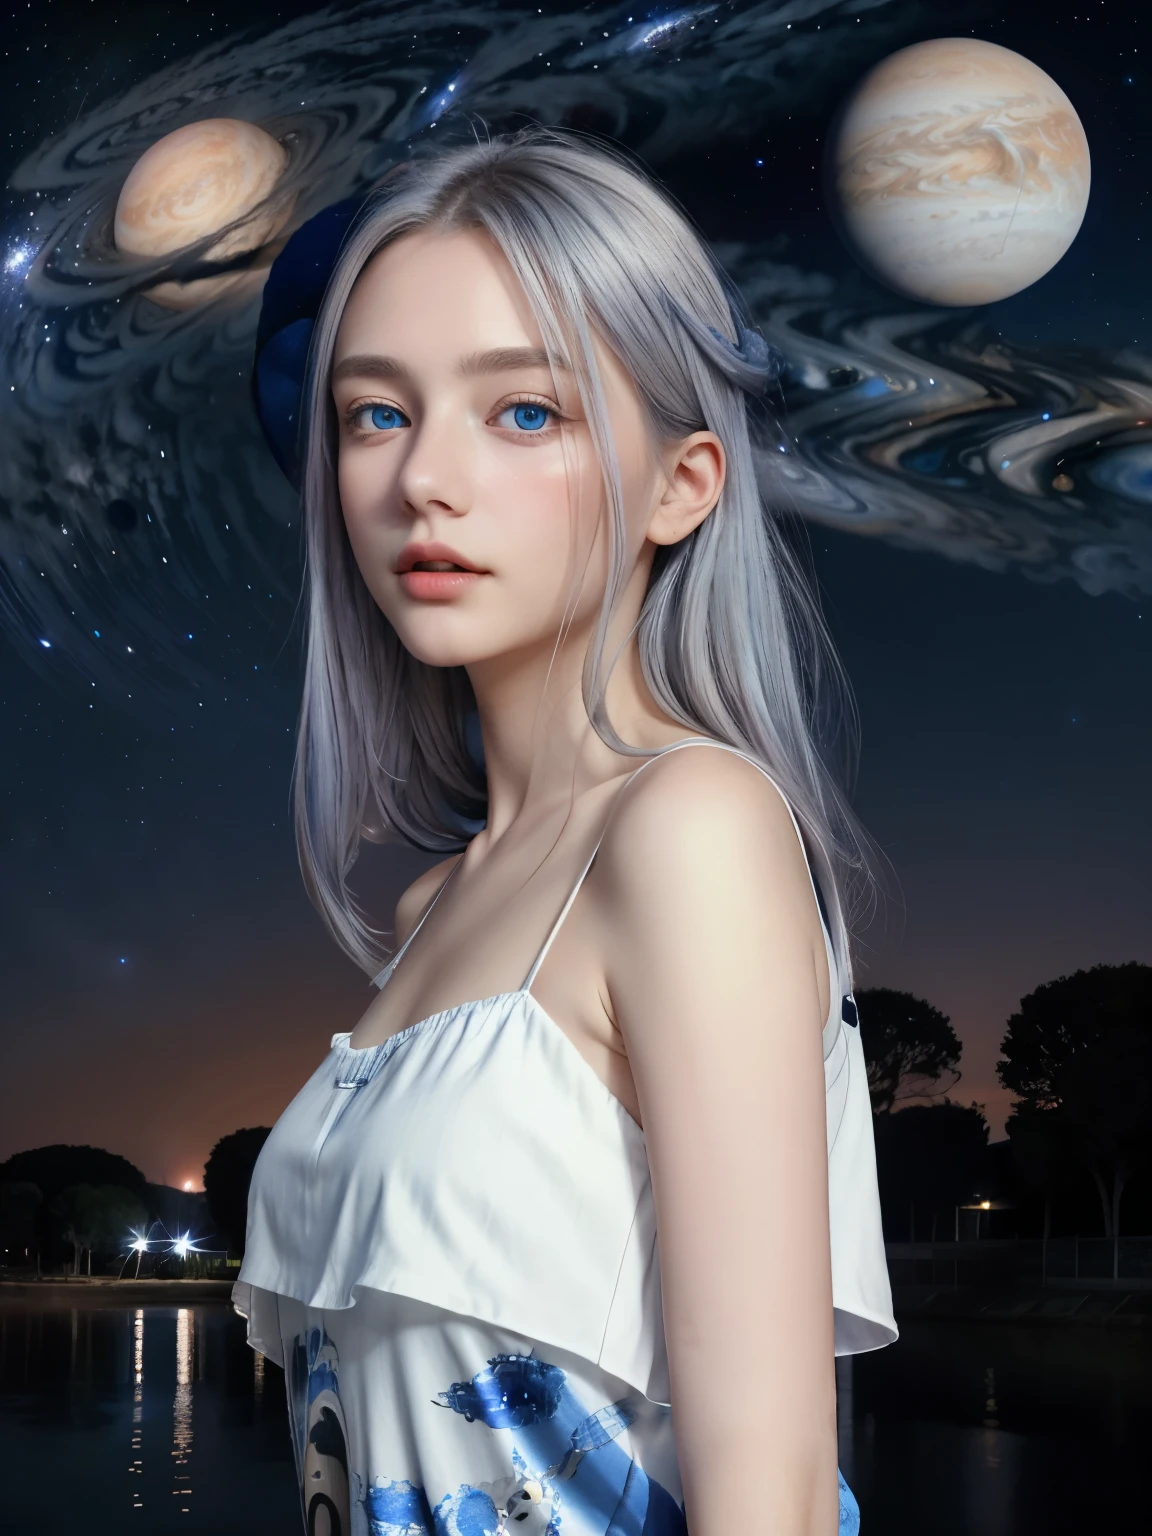 (4K), (اعلى جودة), (أفضل التفاصيل)（سريالية）,فتاة فرنسية جميلة、شعر فضي、عيون زرقاء、كوكب المشتري العملاق يطفو في السماء ليلاً